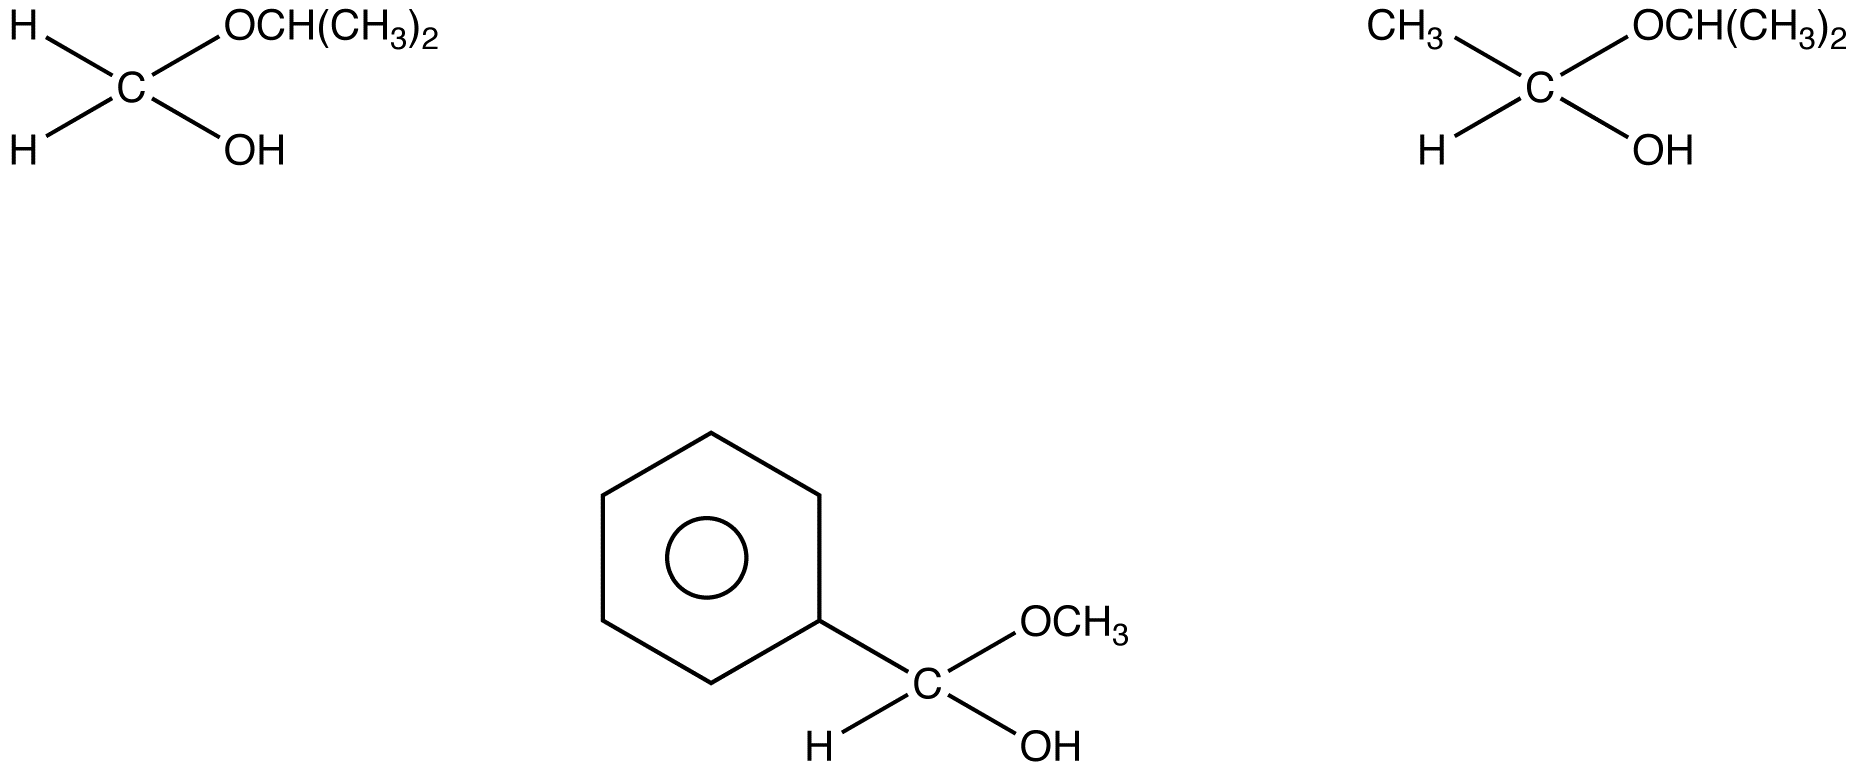 hemiacetal2.png